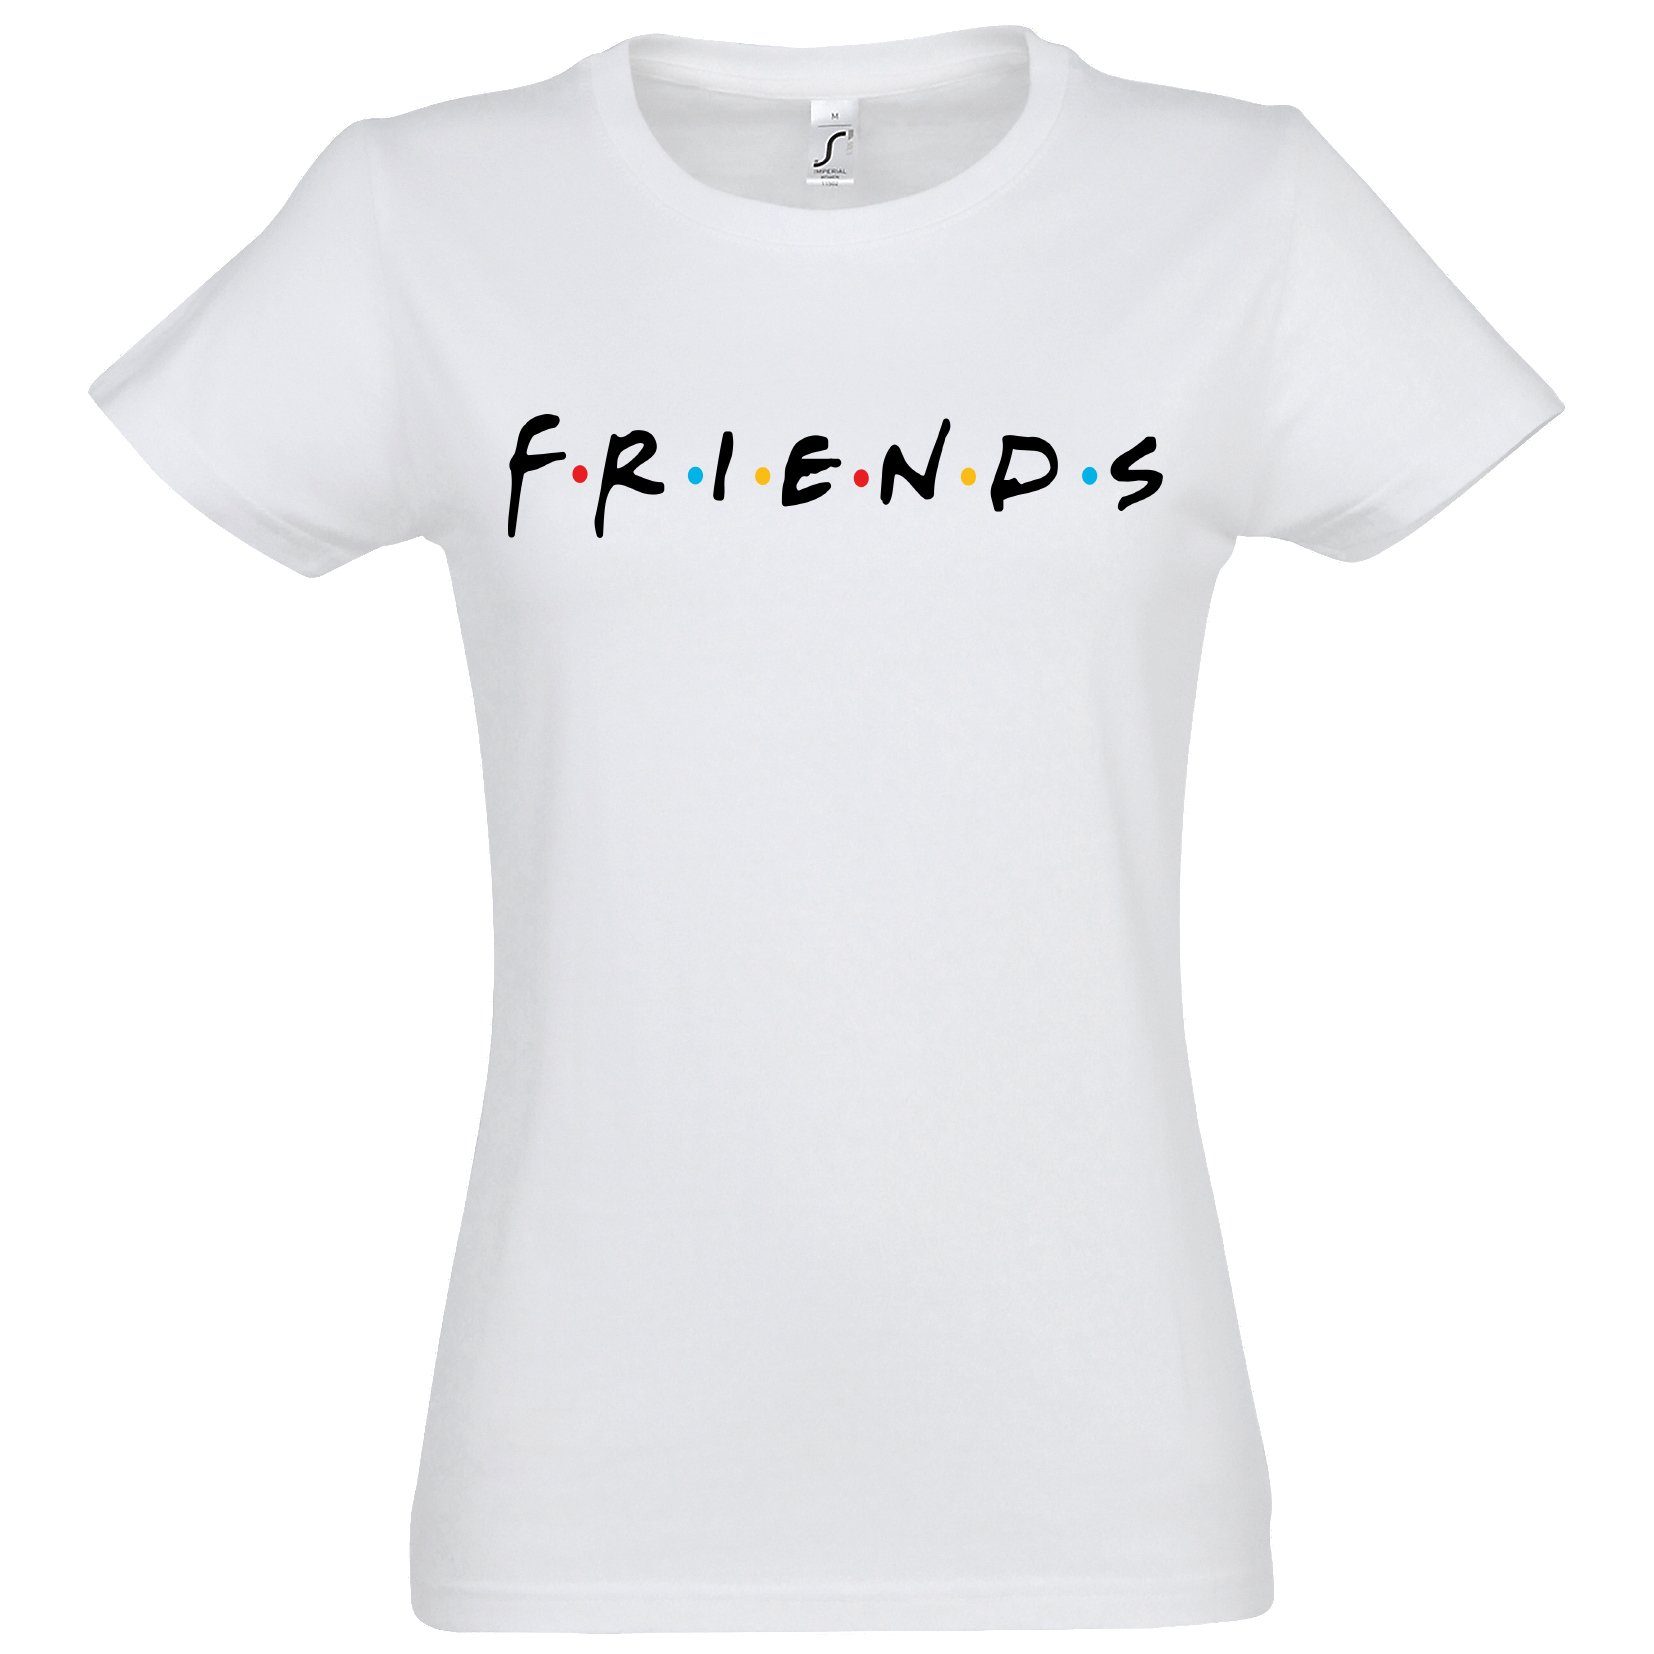 mit Damen T-Shirt Weiß Frontprint, Logo Youth trendiger Friends Shirt Designz Spruch